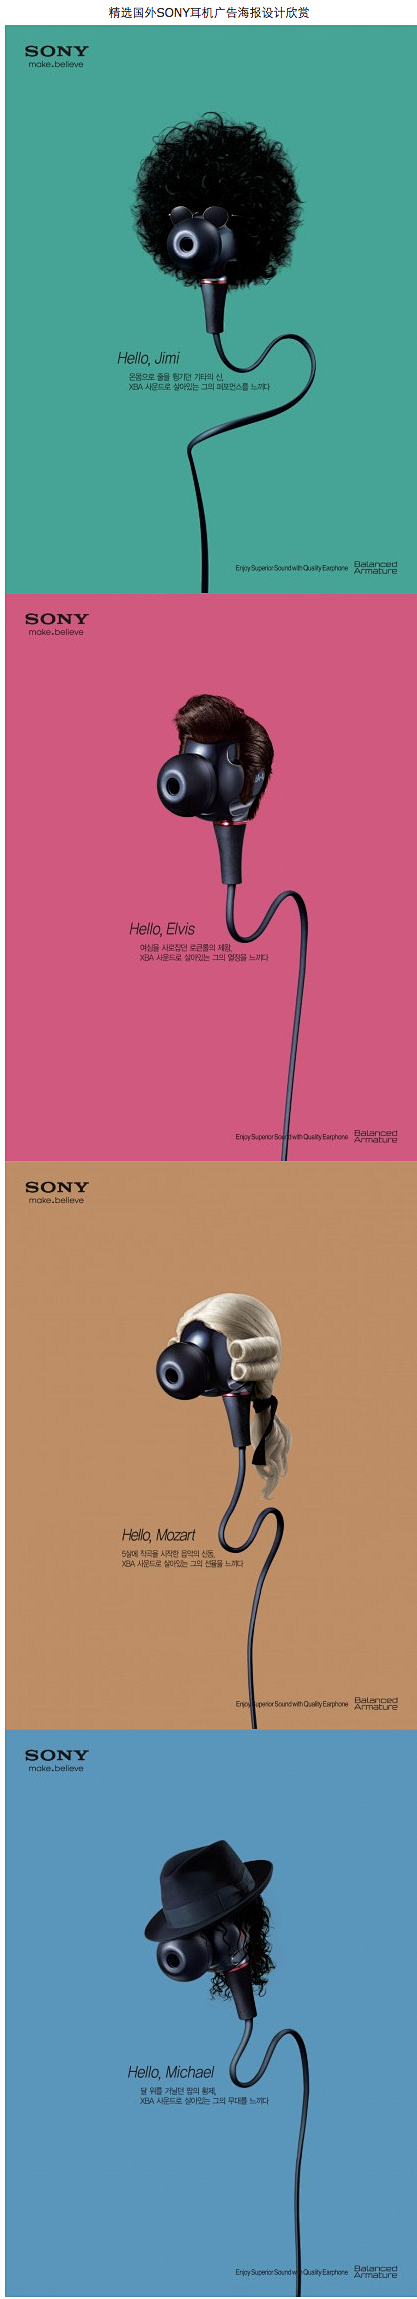 精选国外SONY耳机广告海报设计欣赏@北...